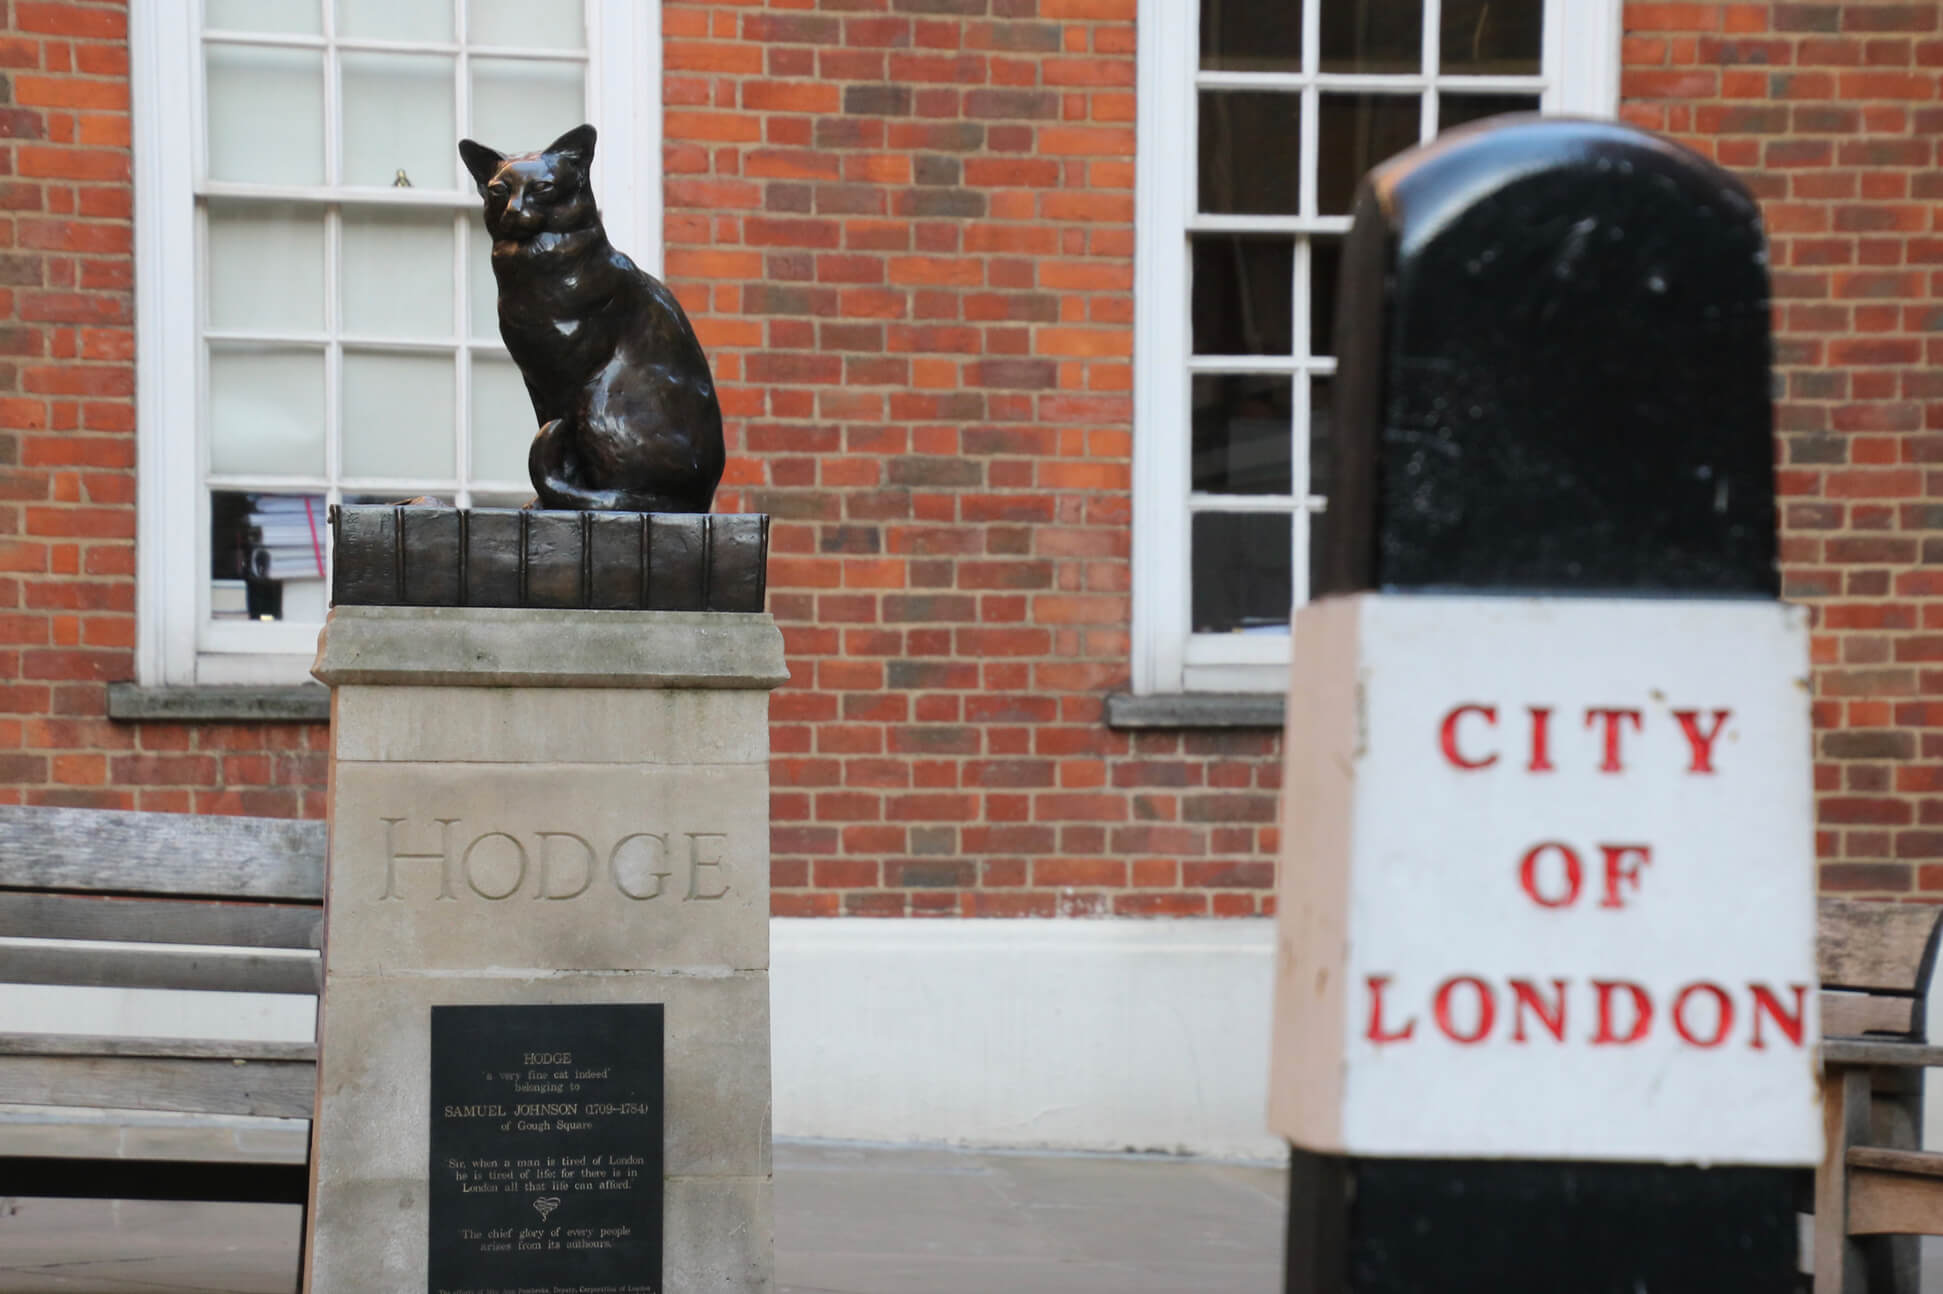 City of London bollard & Cat